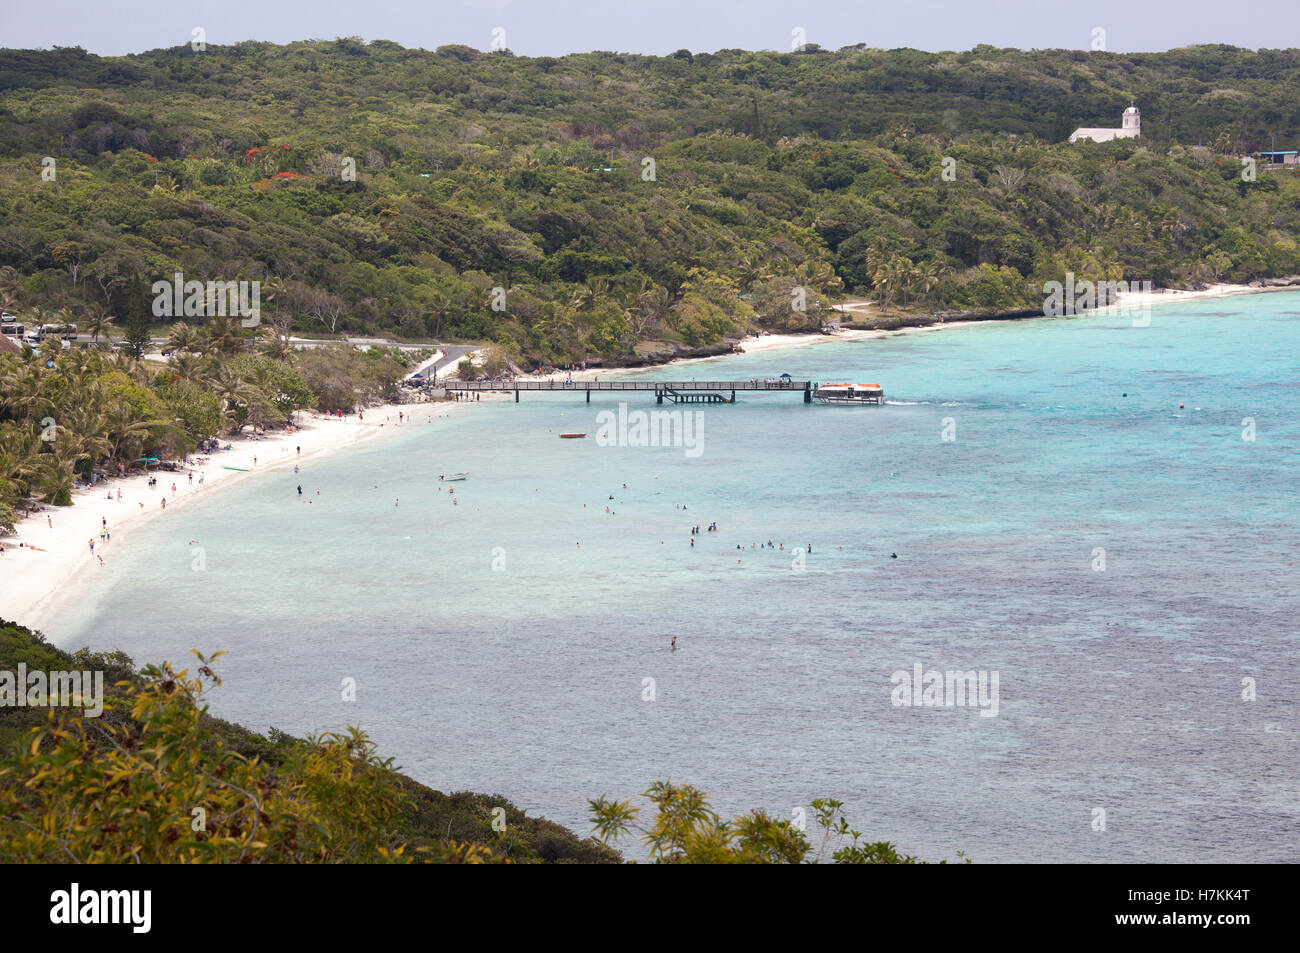 The view of Easo village beach on Lifou island (New Caledonia). Stock Photo